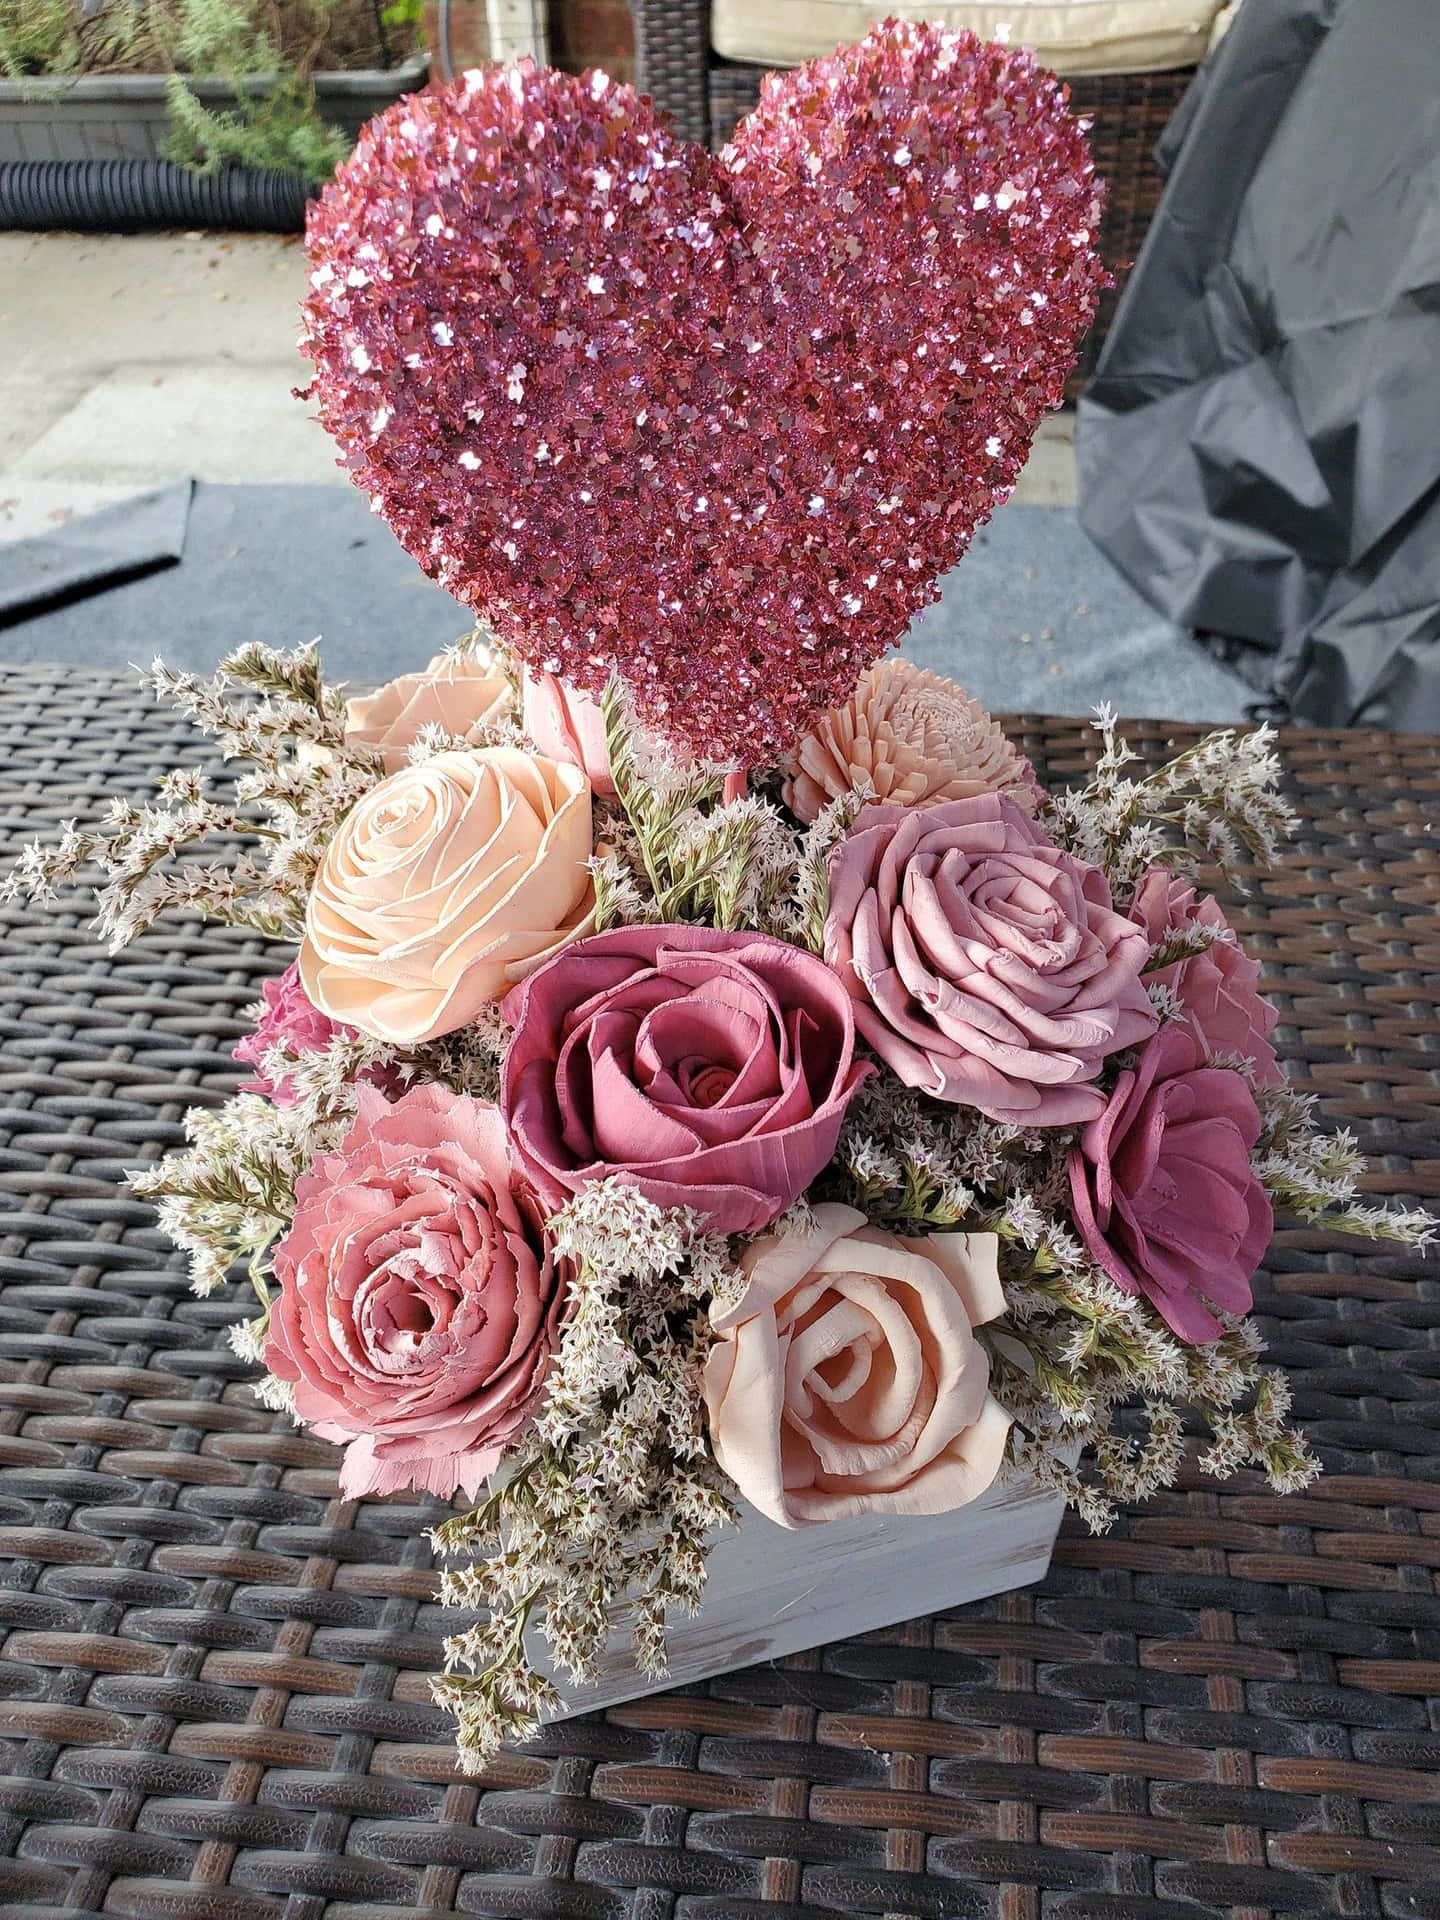 A Pink Heart Shaped Flower Arrangement